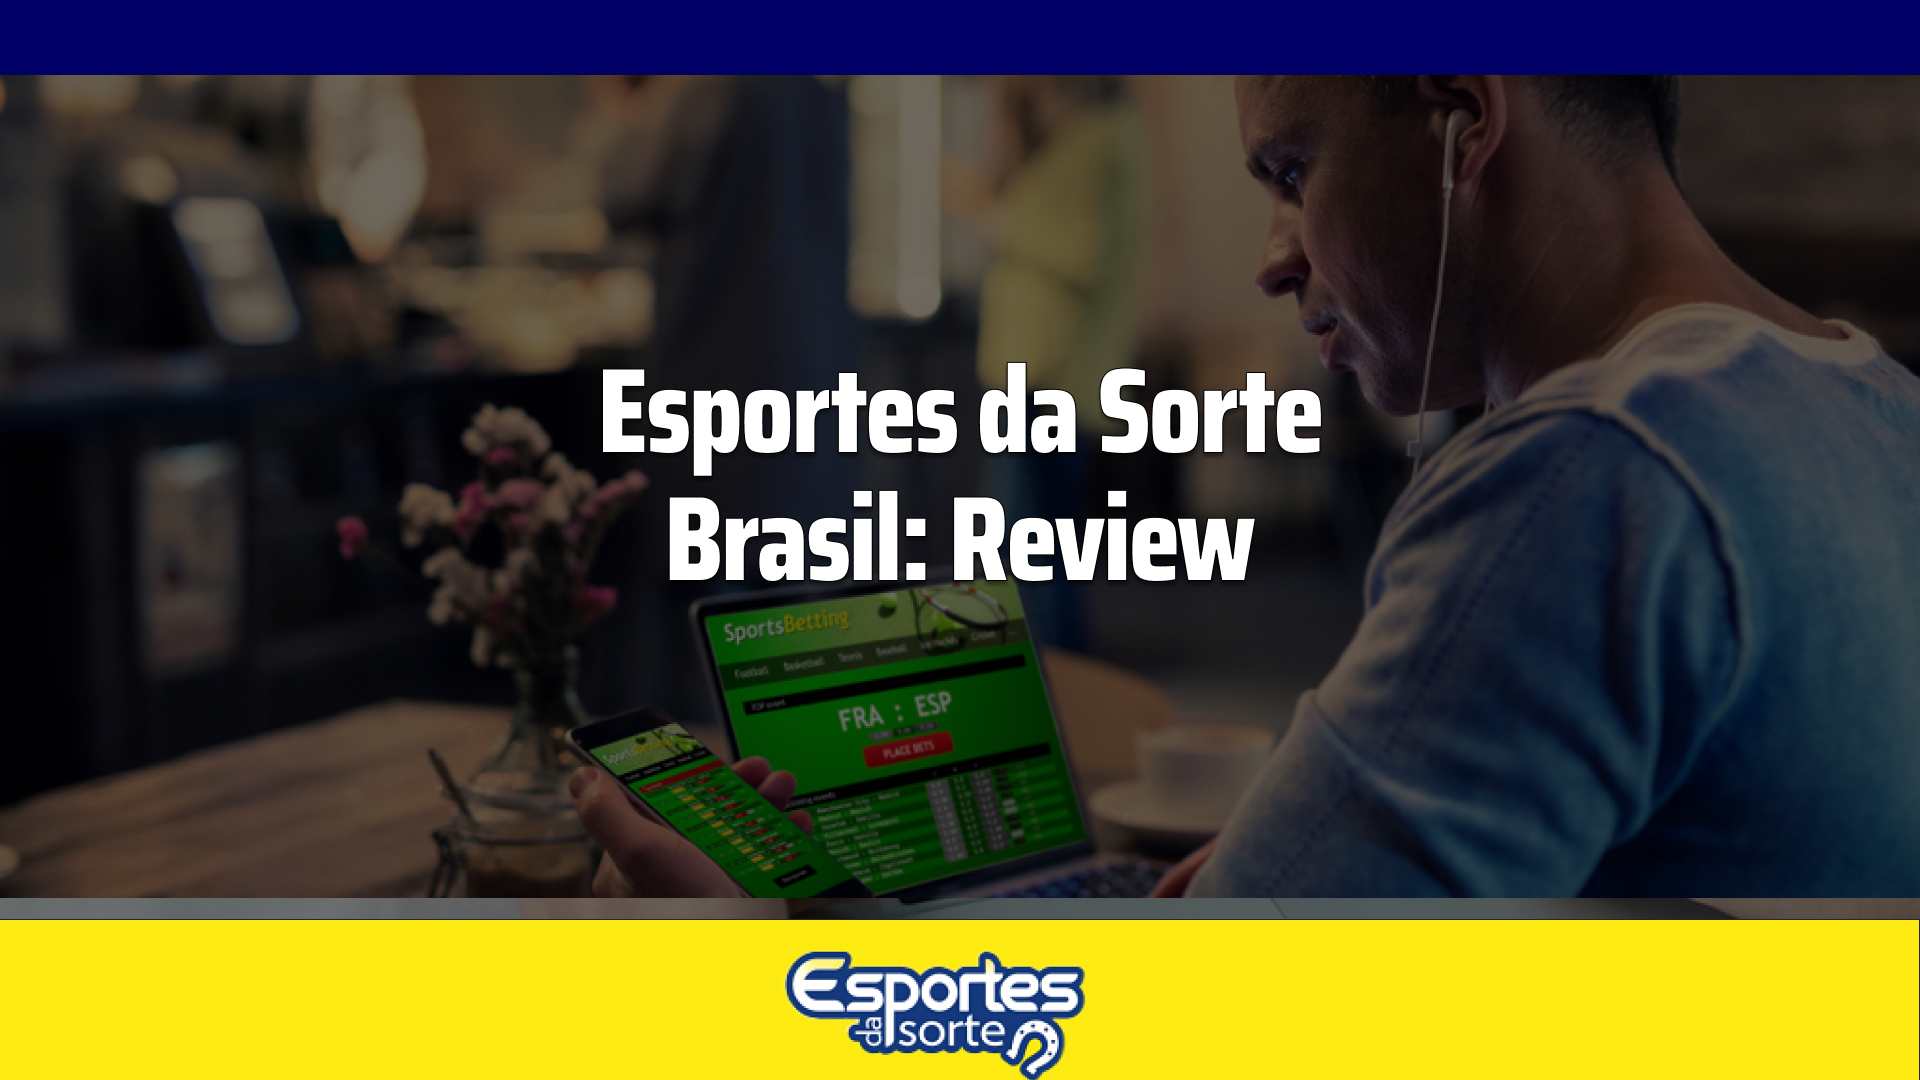 Esportes da Sorte Brasil Review